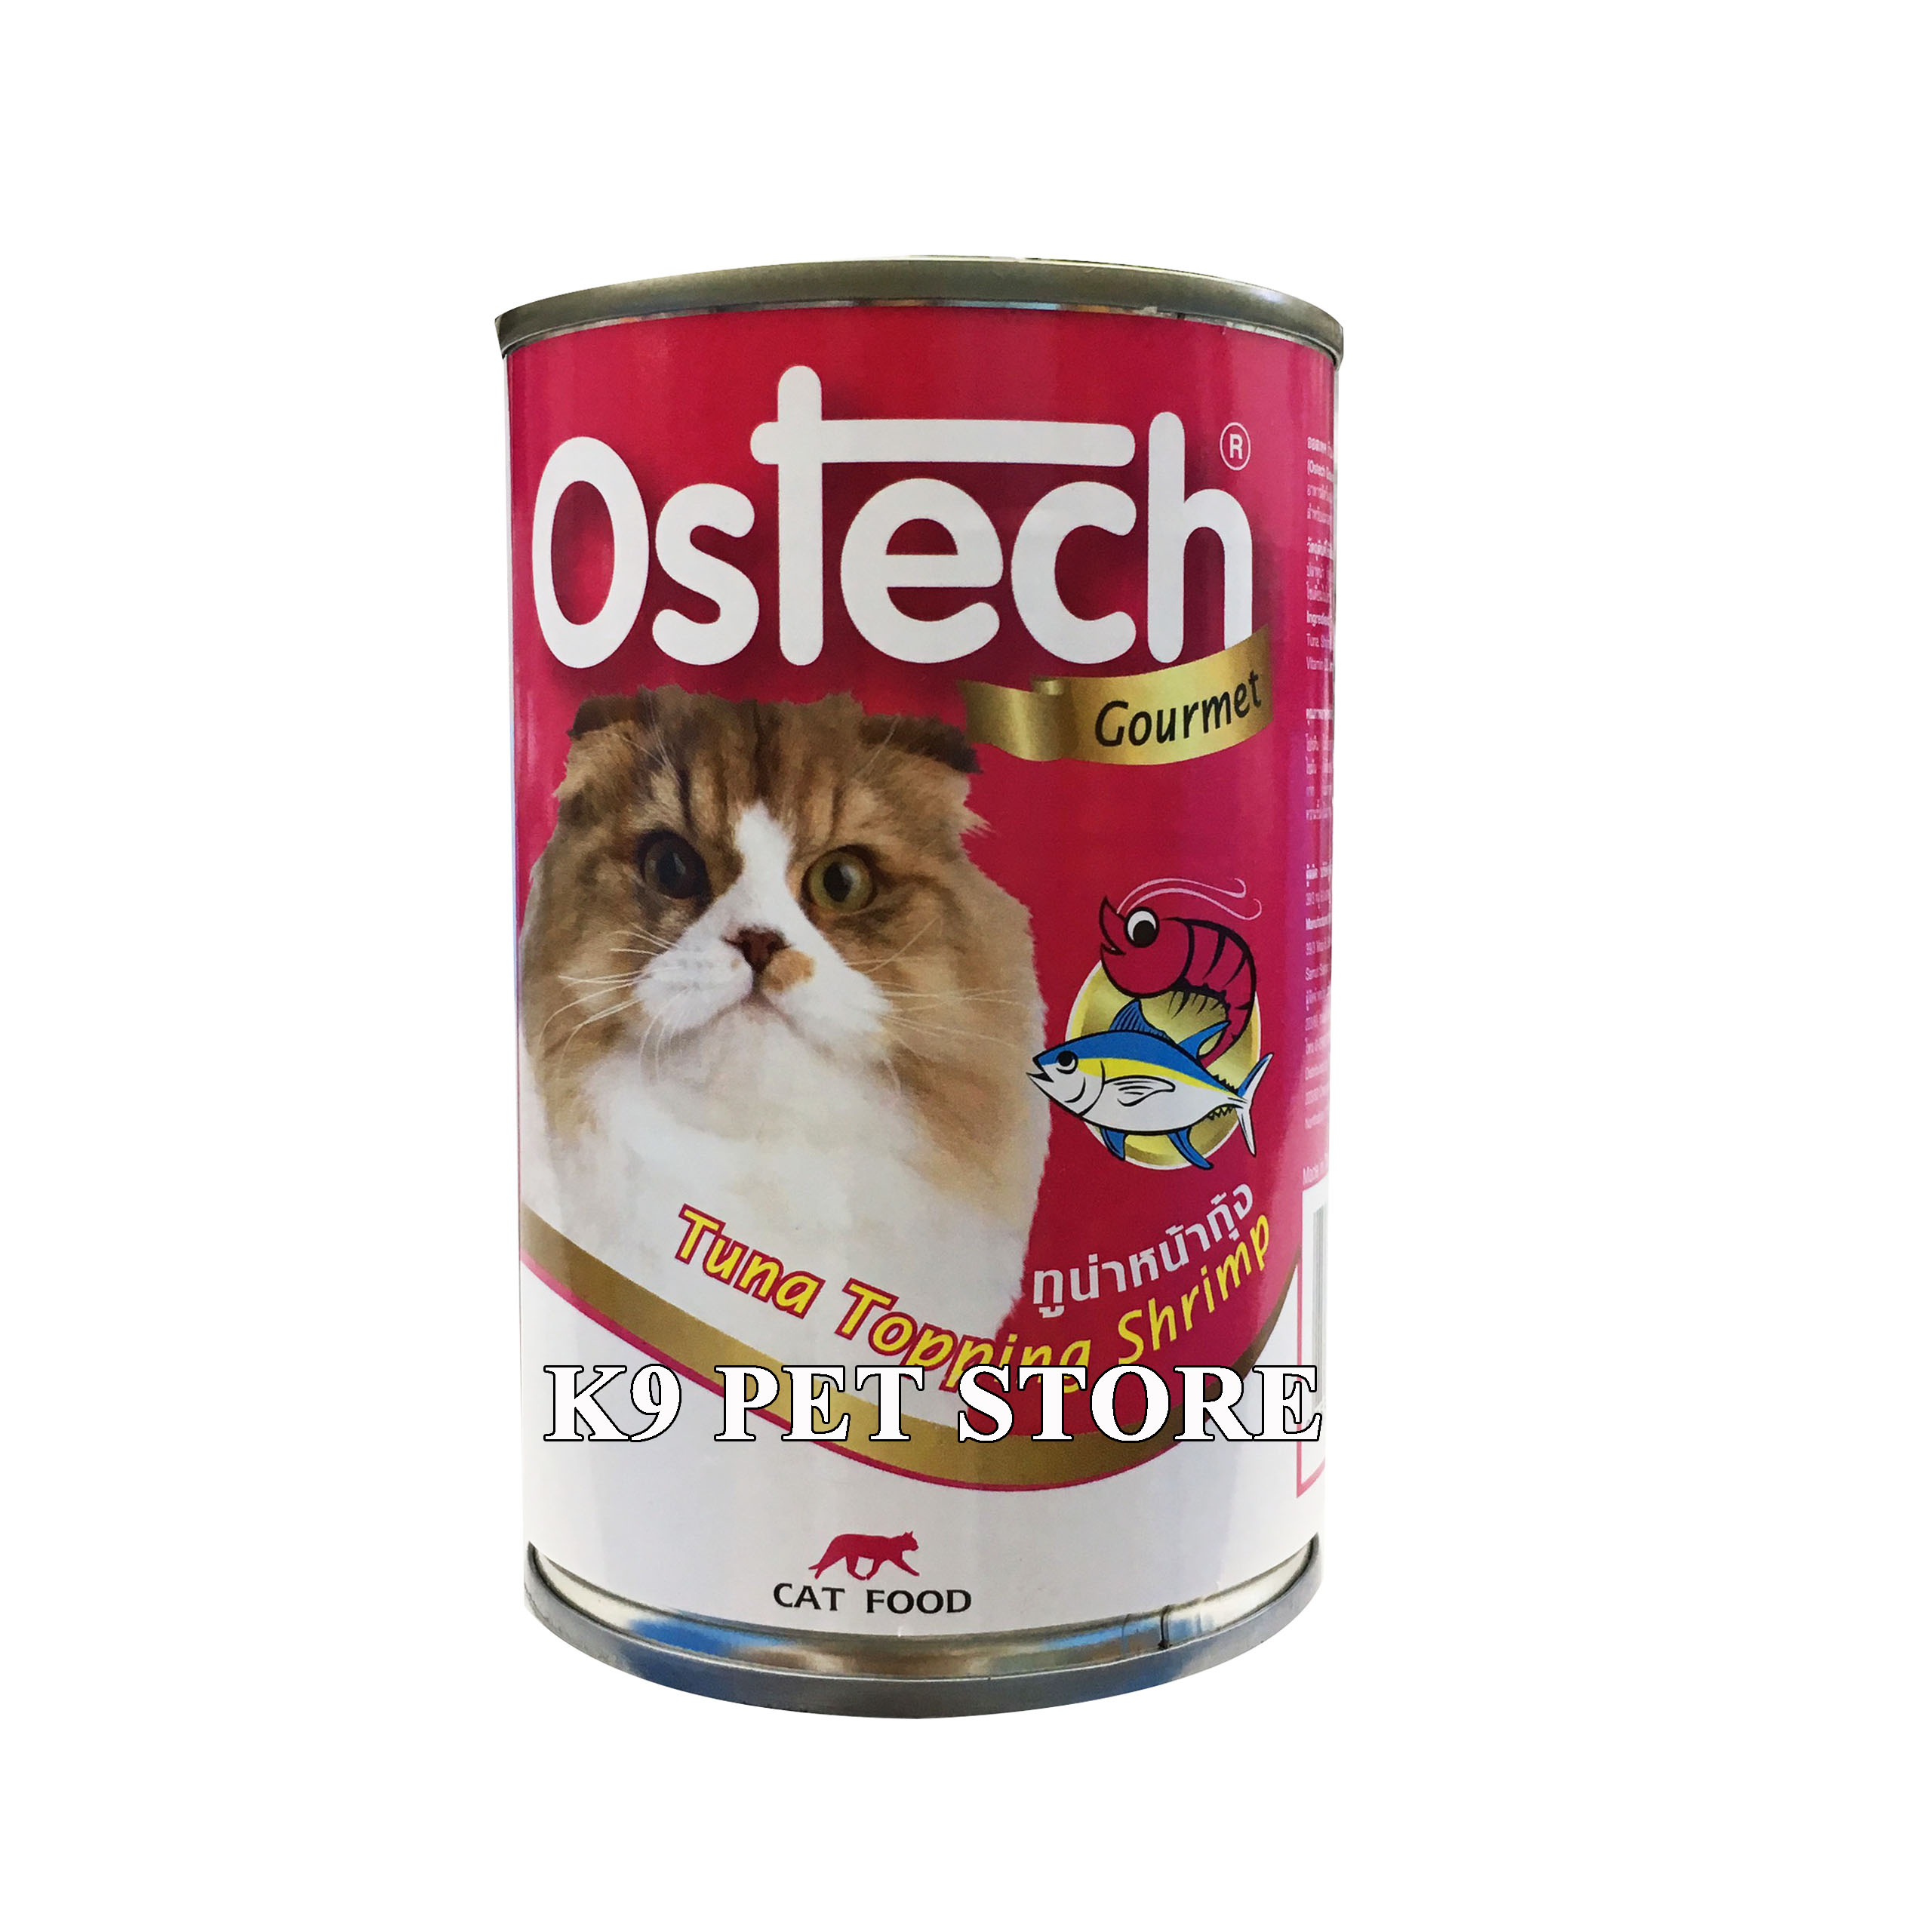 Pate lon cho mèo Ostech Gourmet vị Cá ngừ và Tôm 400g